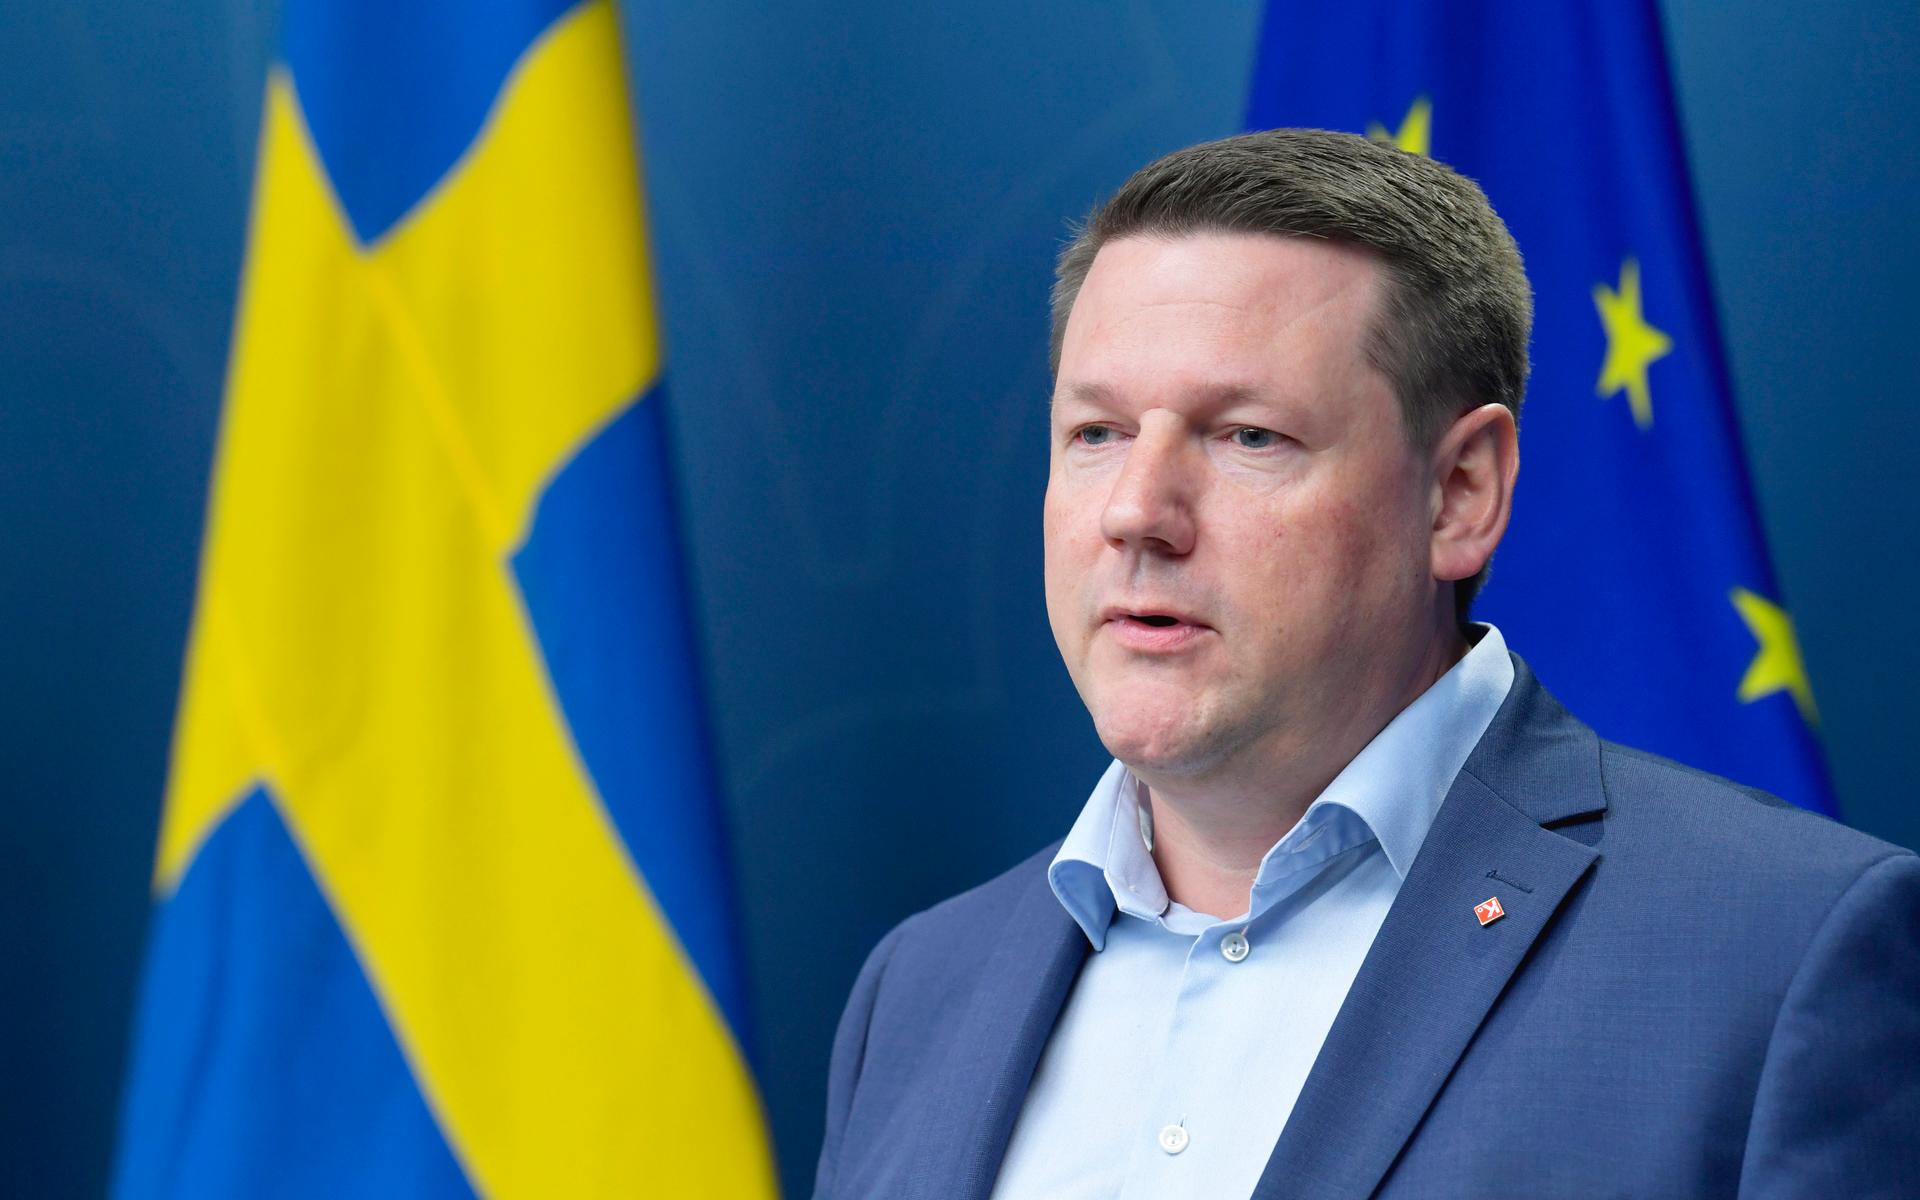 ”Självklart är ledstjärnan för våra diskussioner vad som är bäst för Sveriges säkerhet” säger Socialdemokraternas partisekreterare Tobias Baudin.